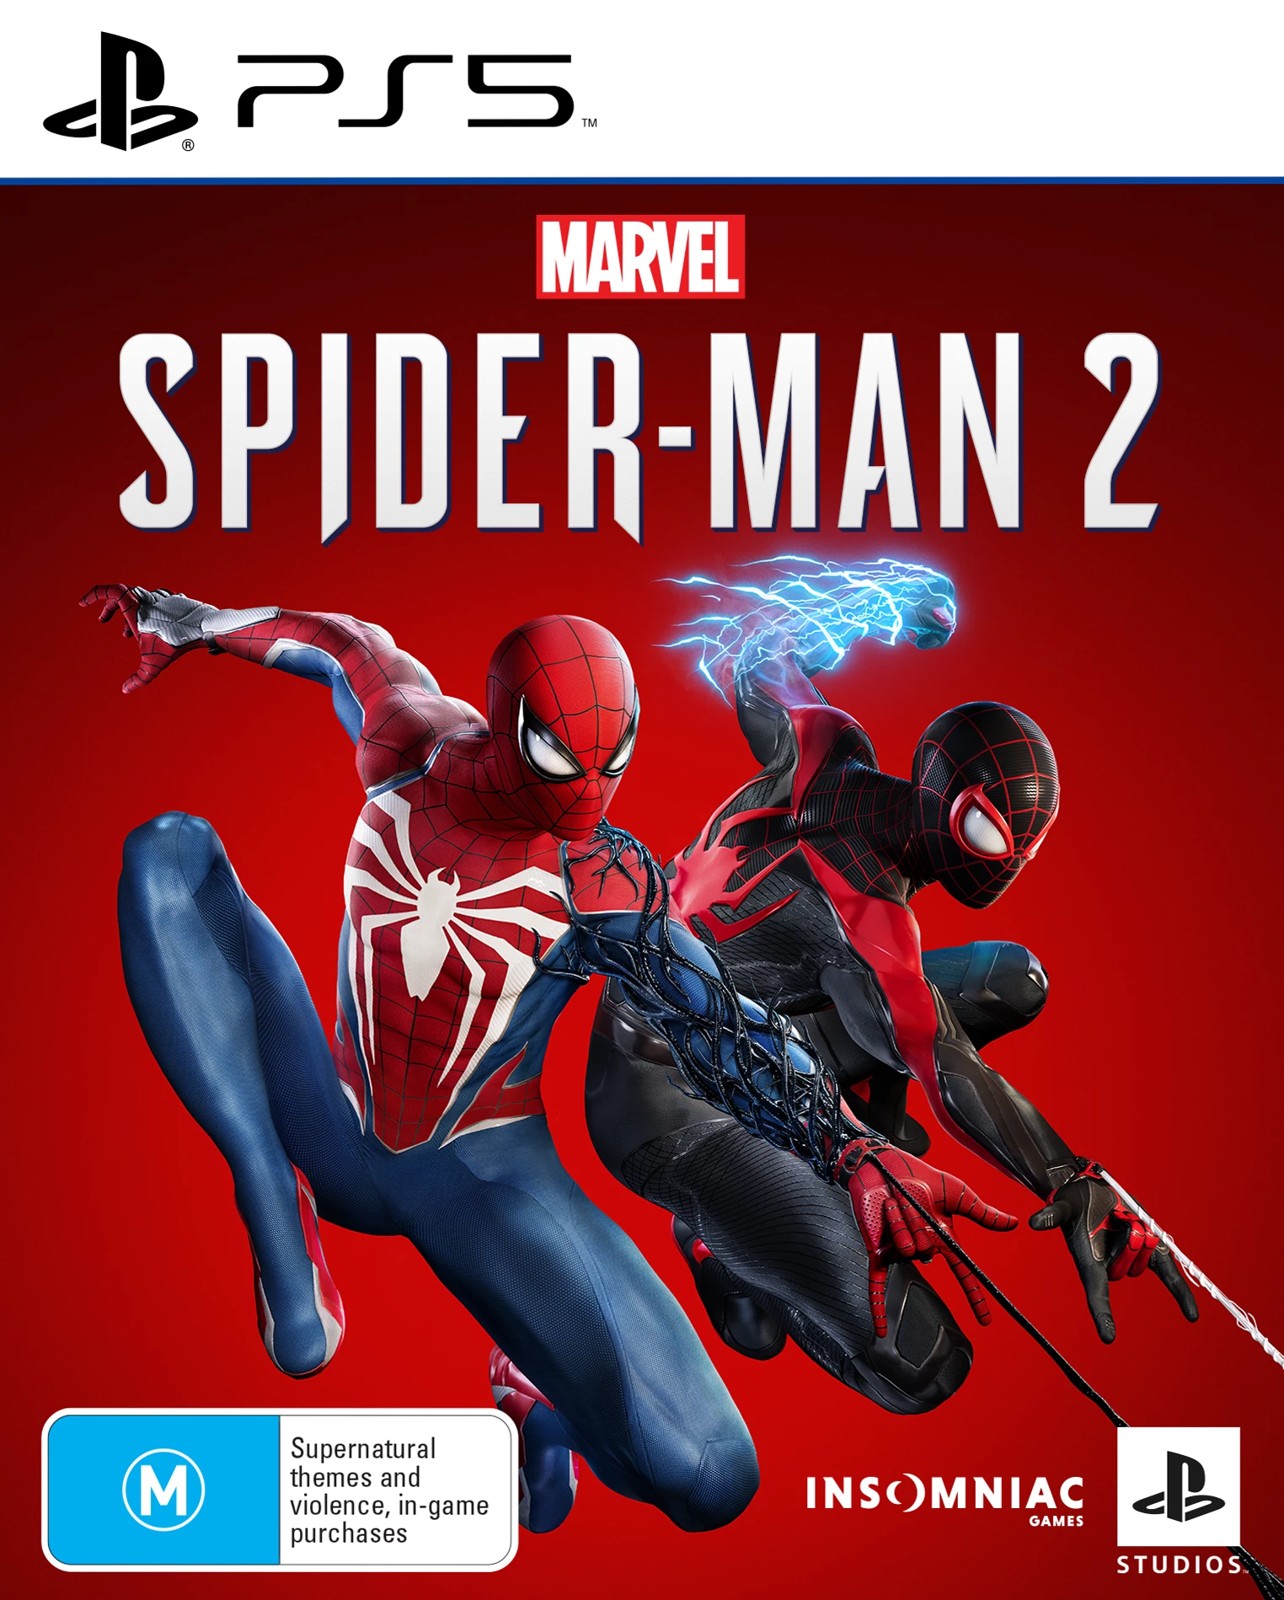 Playstation Marvel's Spider-Man